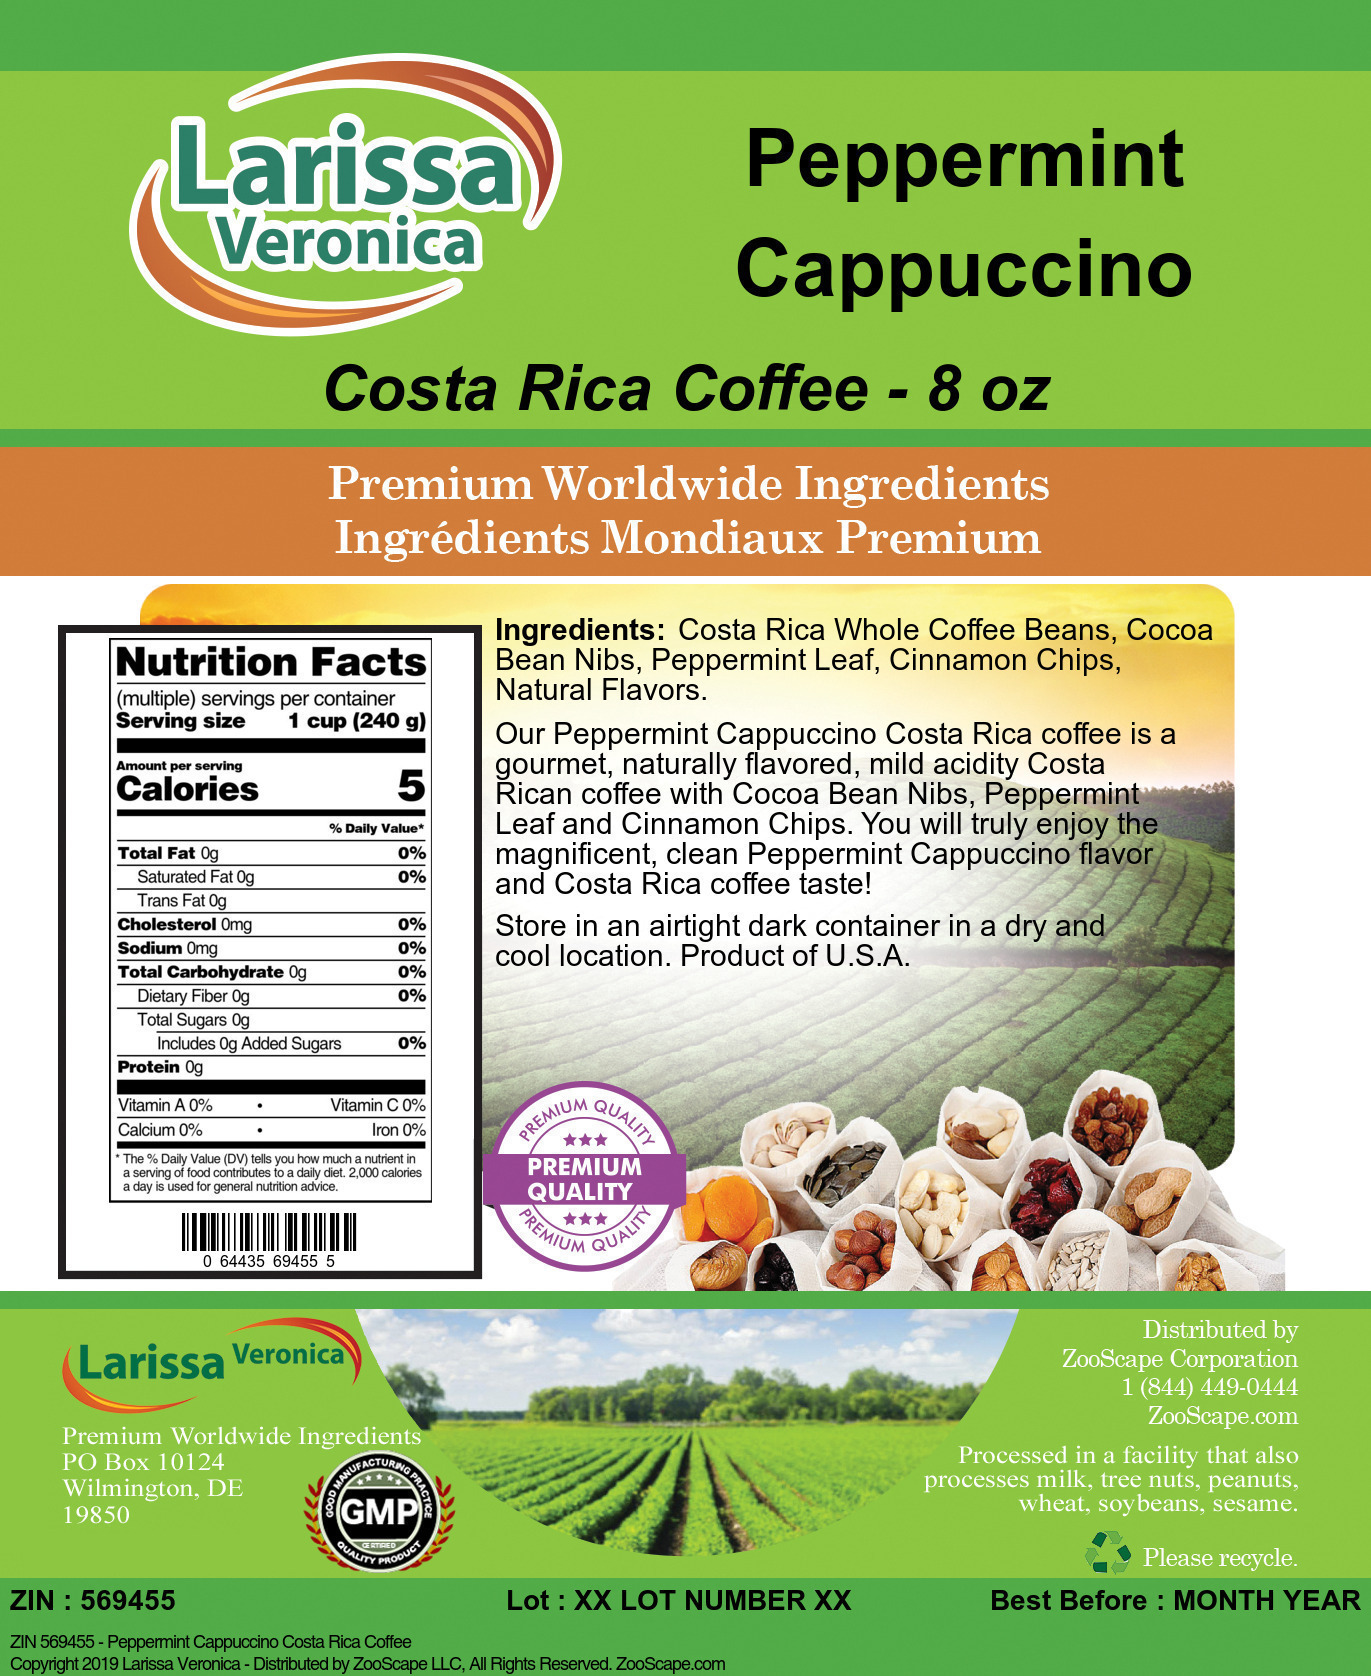 Peppermint Cappuccino Costa Rica Coffee - Label